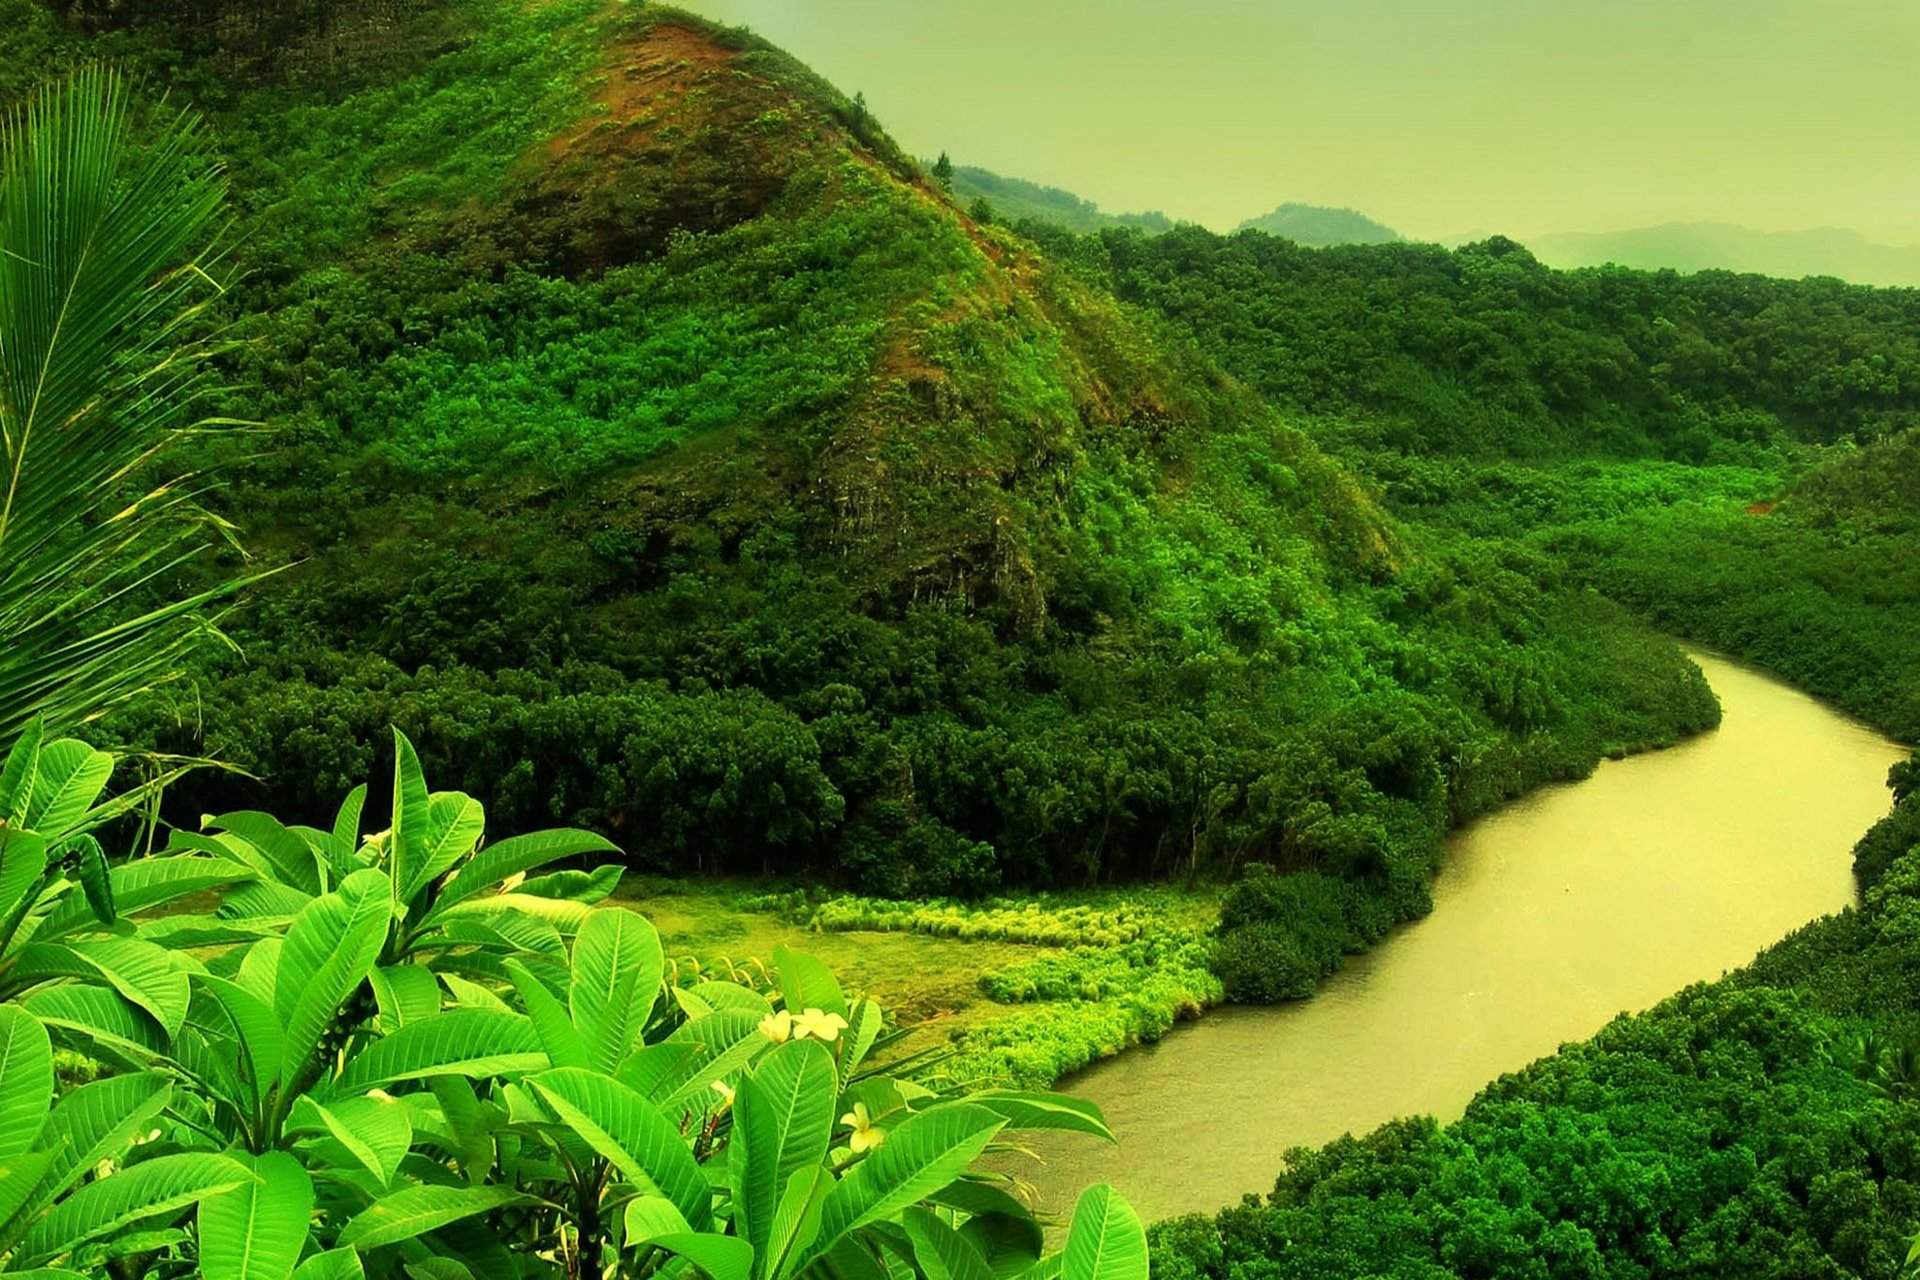 Wailua River , HD Wallpaper & Backgrounds